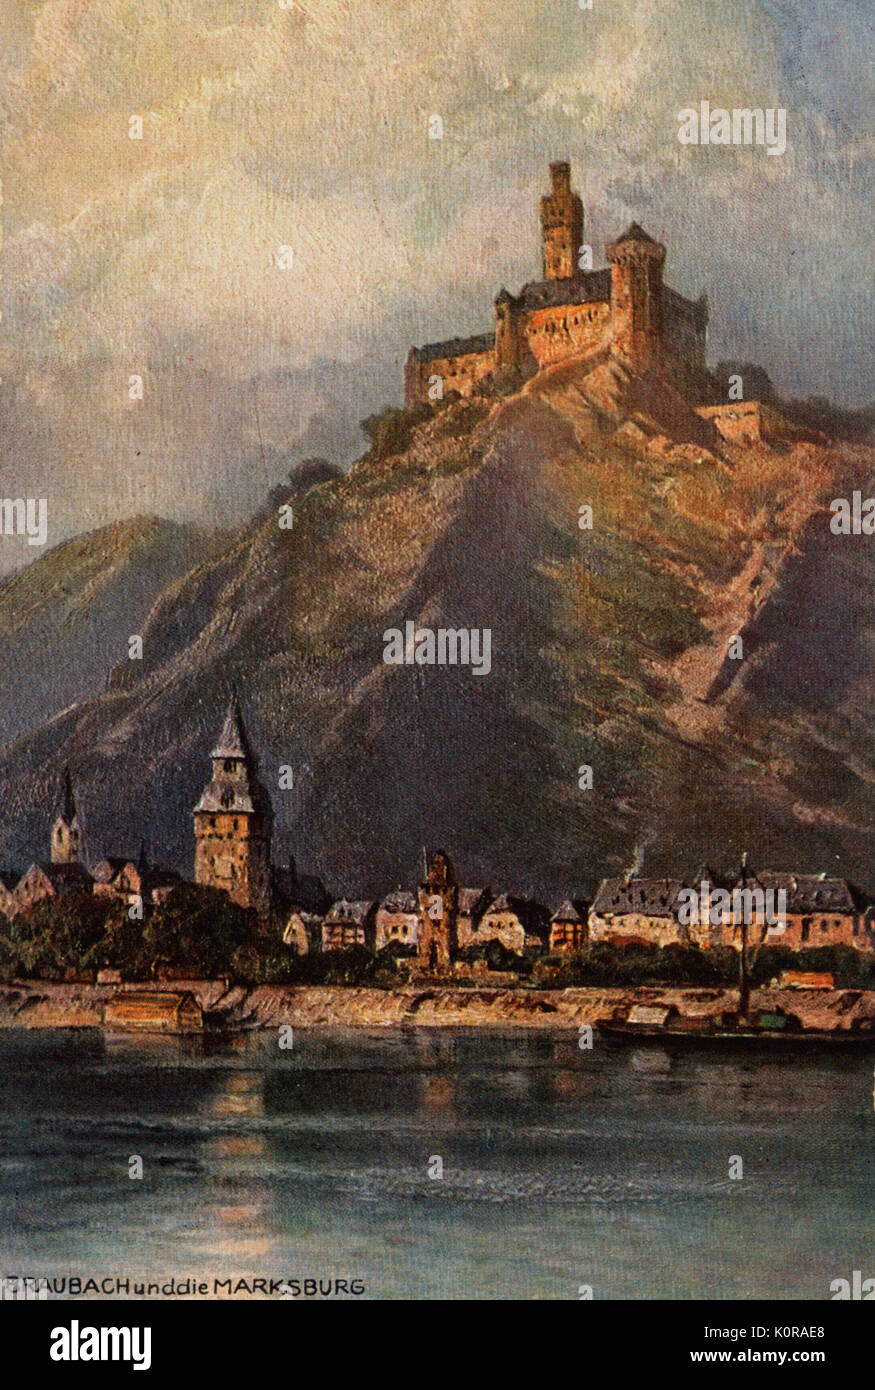 Marksburg, Braubach, Szene am Rhein, Deutschland. Abbildung: nach dem Lackieren von Nikolai Lwowitsch Astudin (1847 - 1925) Stockfoto